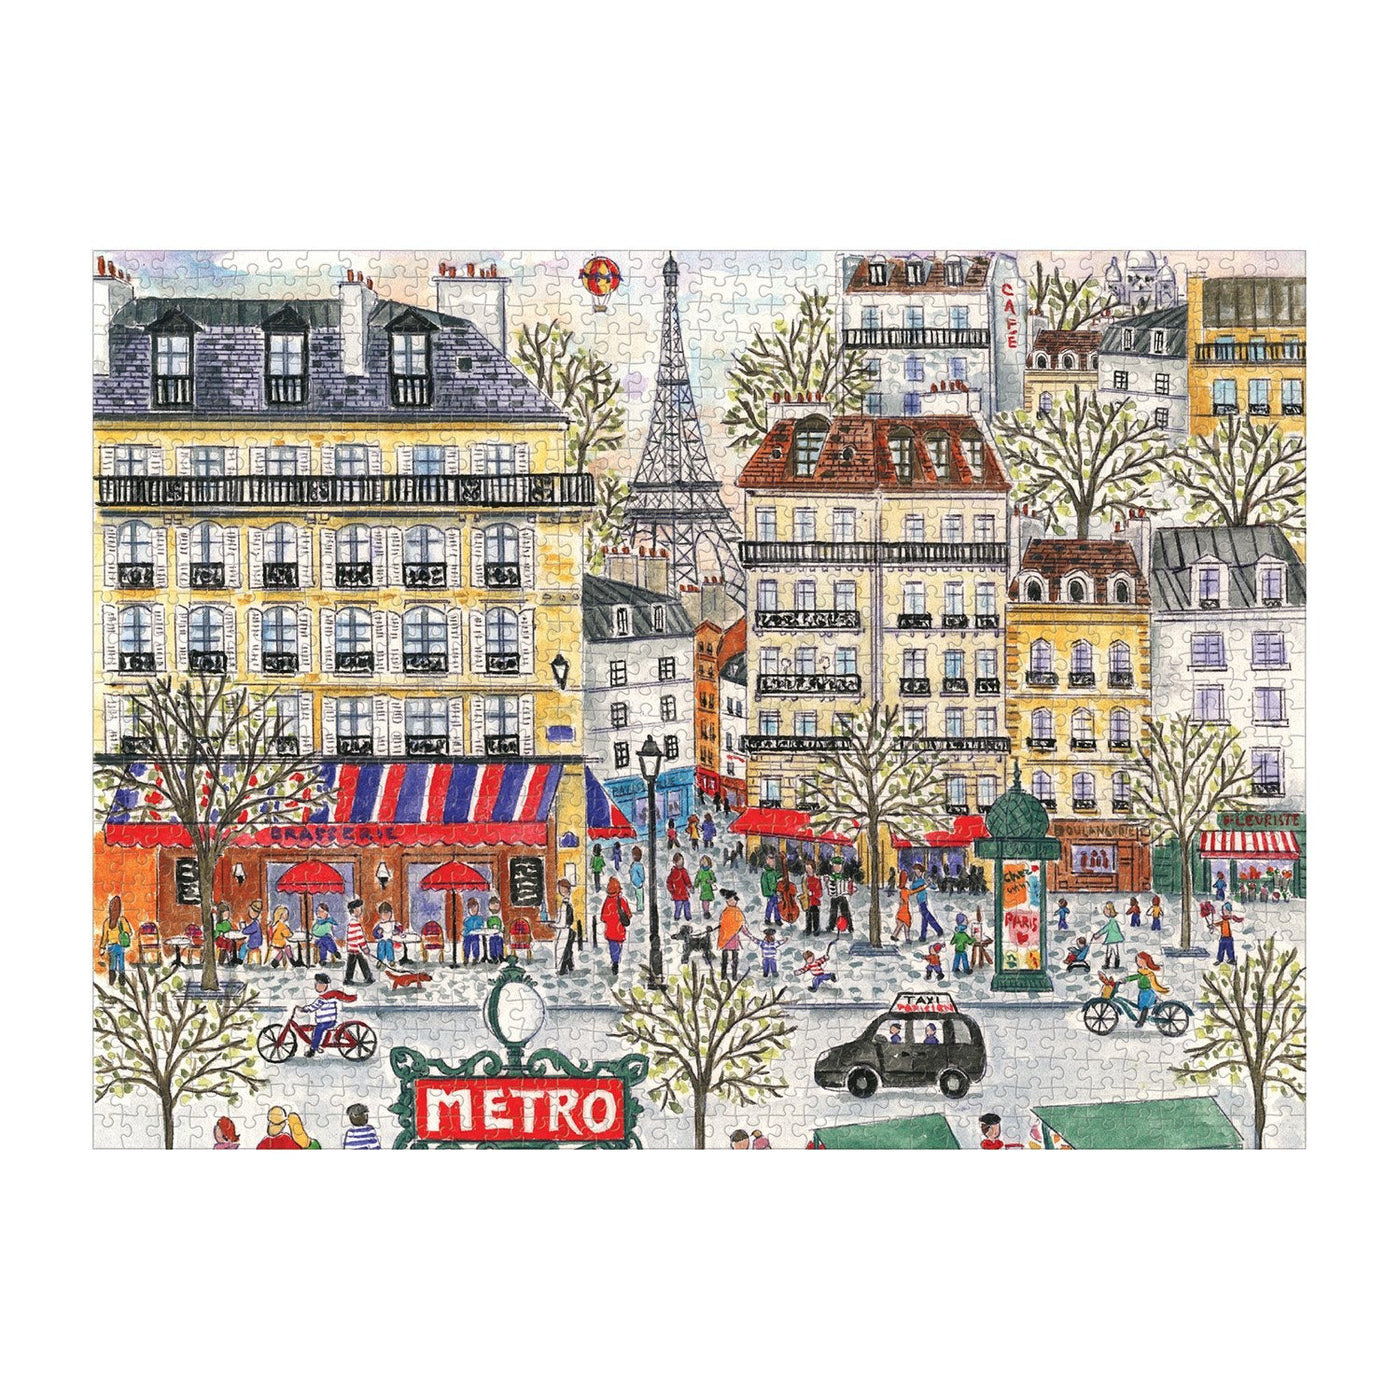 Michael Storrings Paris | 1,000 Piece Jigsaw Puzzle